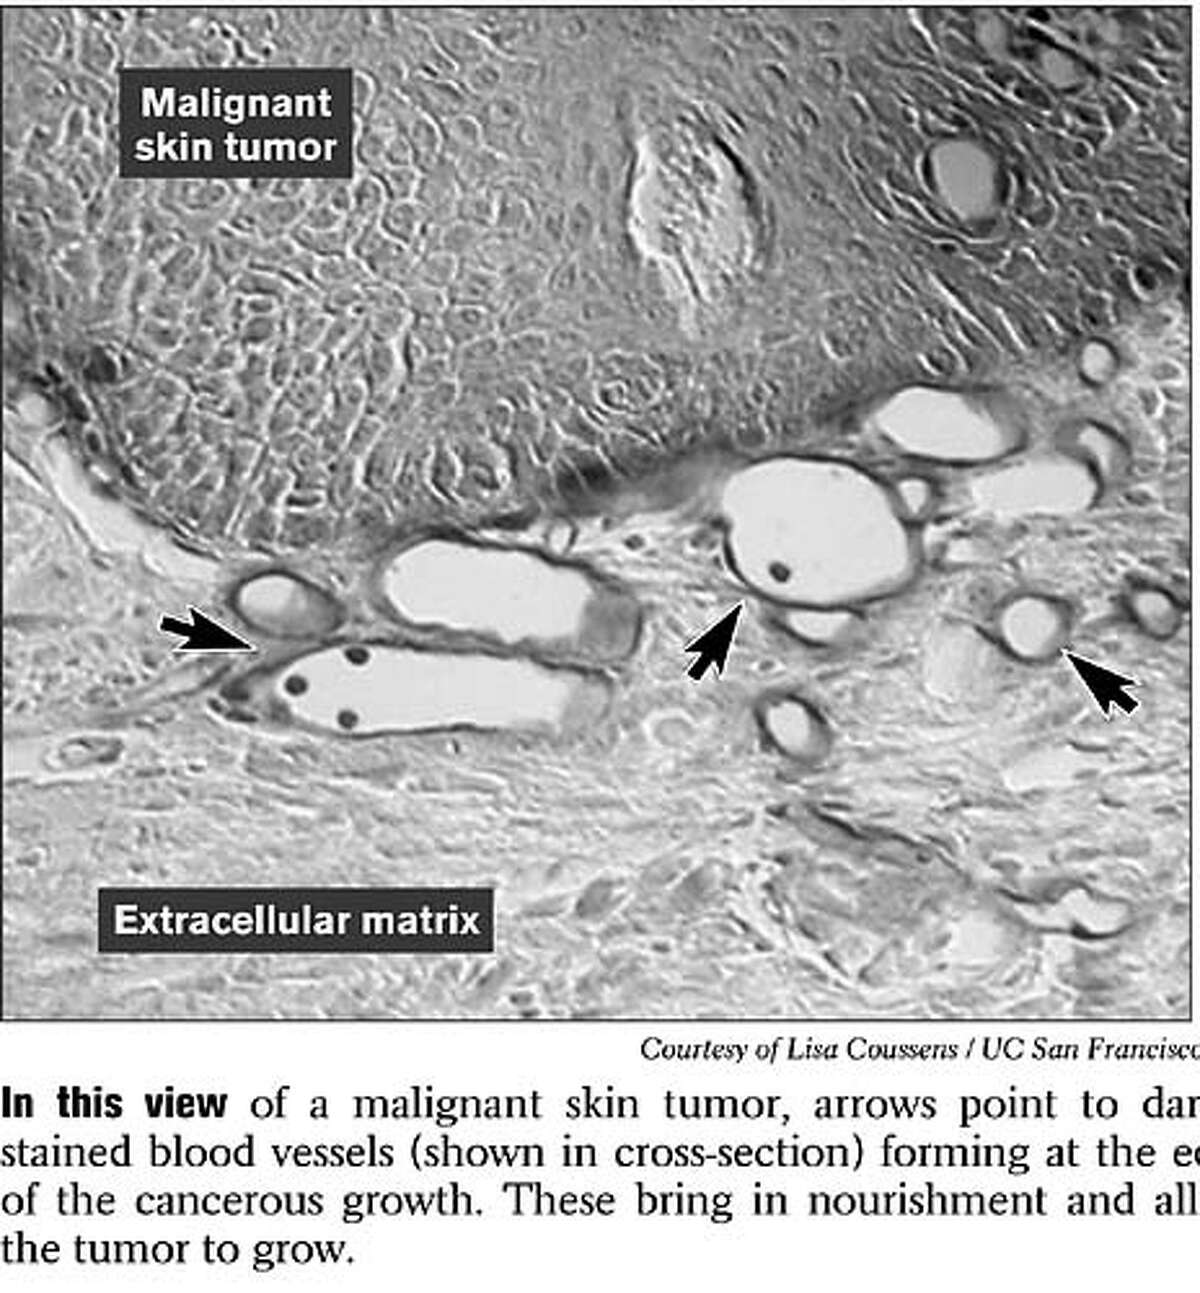 Malignant Skin Tumor. Photo courtesy of Lisa Coussens, UCSF